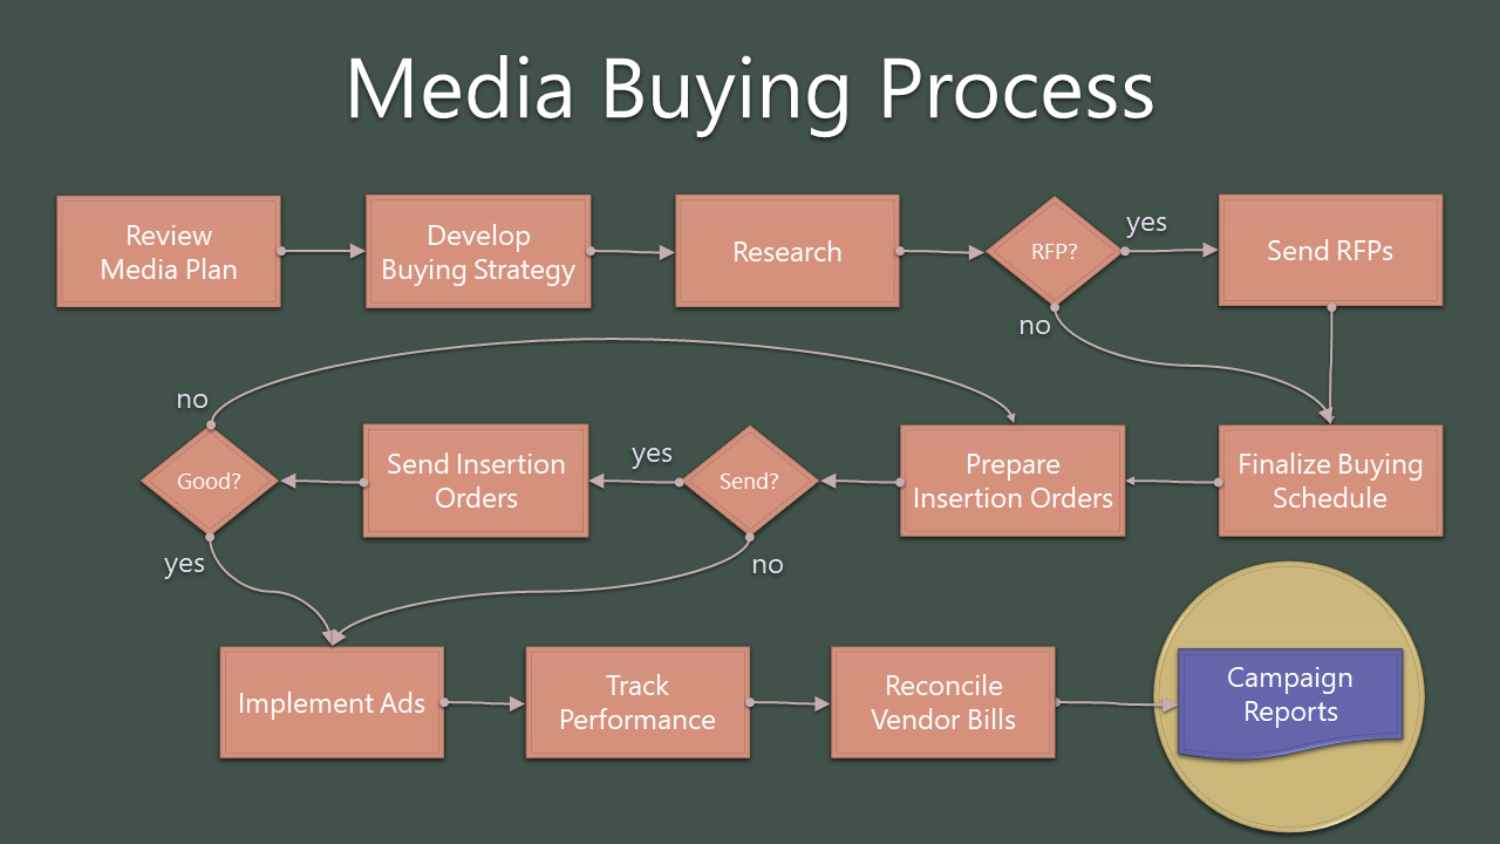 Digital media buying